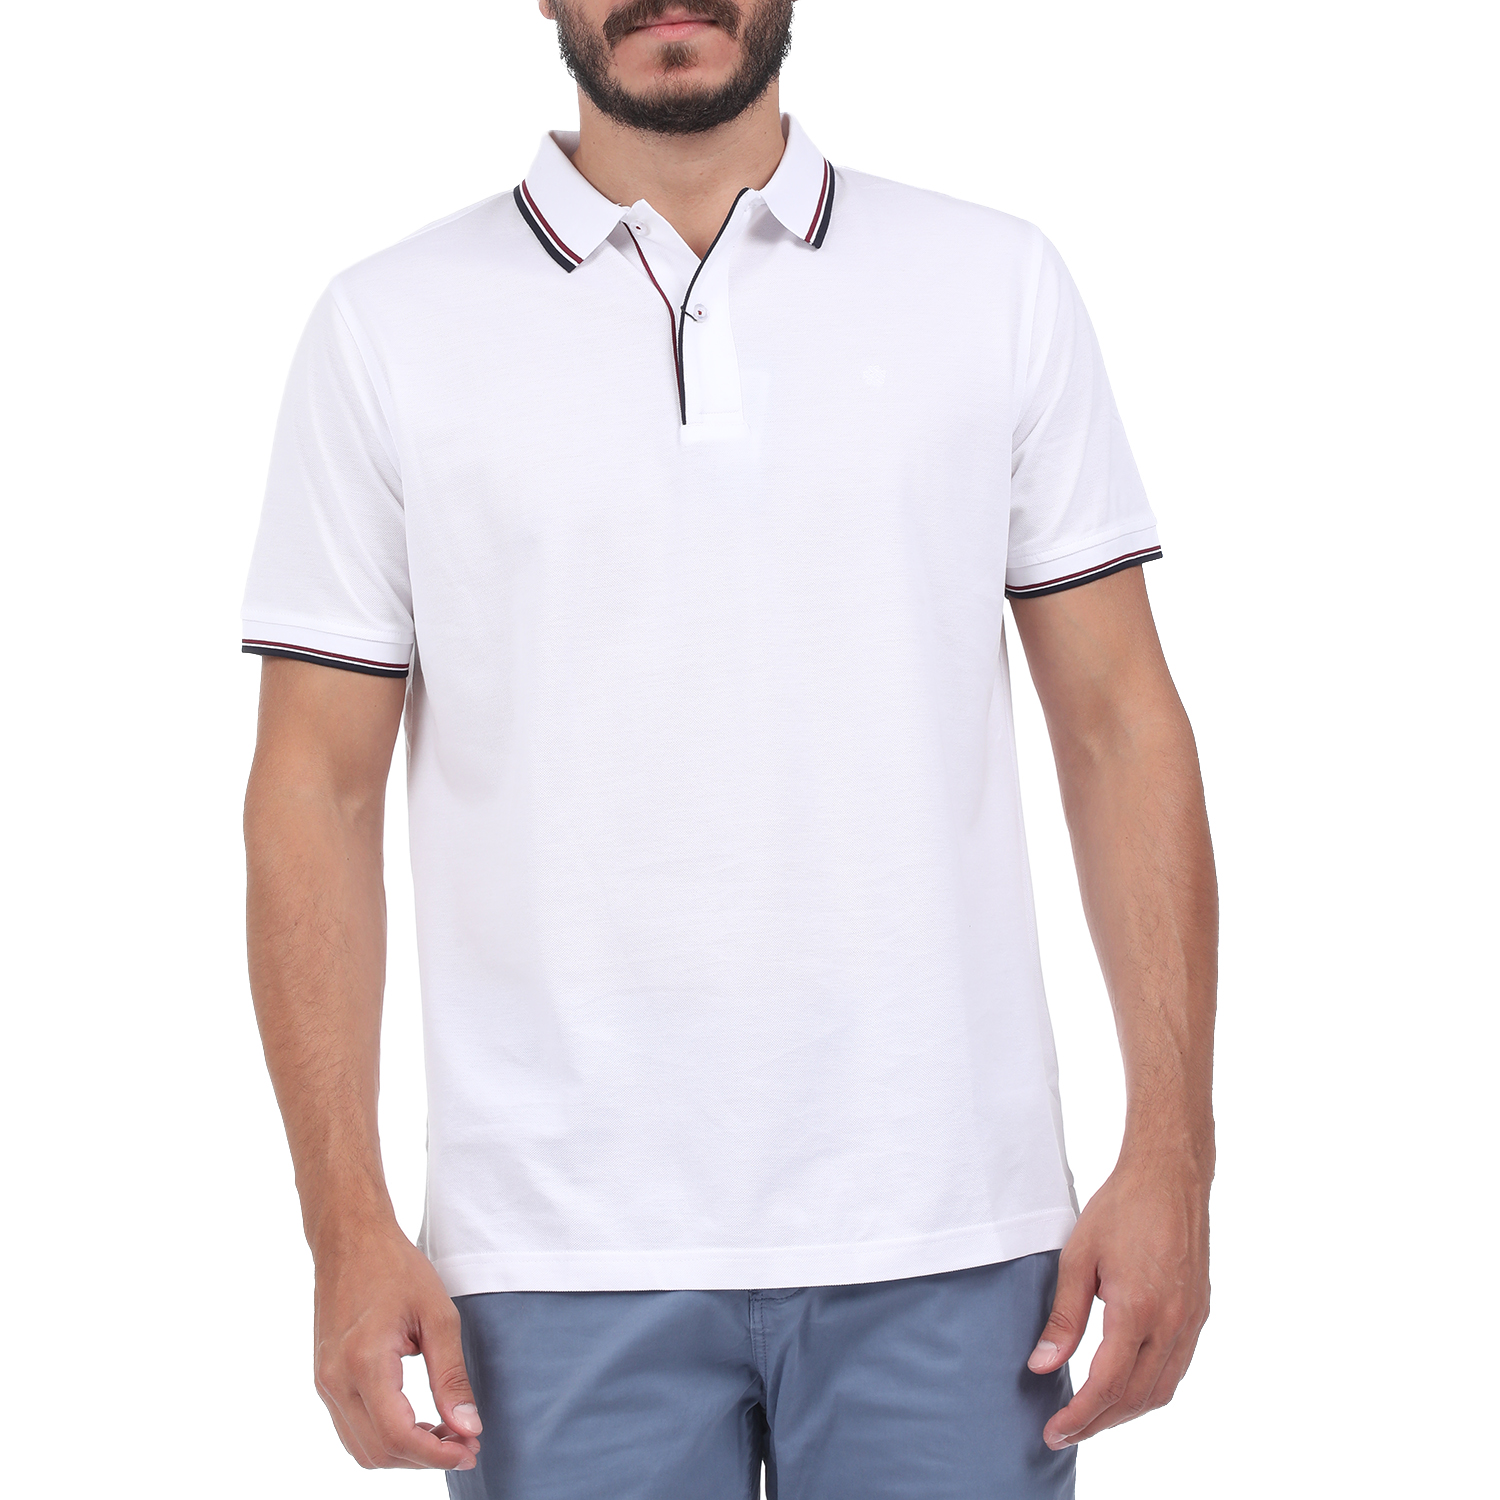 Ανδρικά/Ρούχα/Μπλούζες/Πόλο DORS - Ανδρική polo μπλούζα DORS MERCERISED λευκή